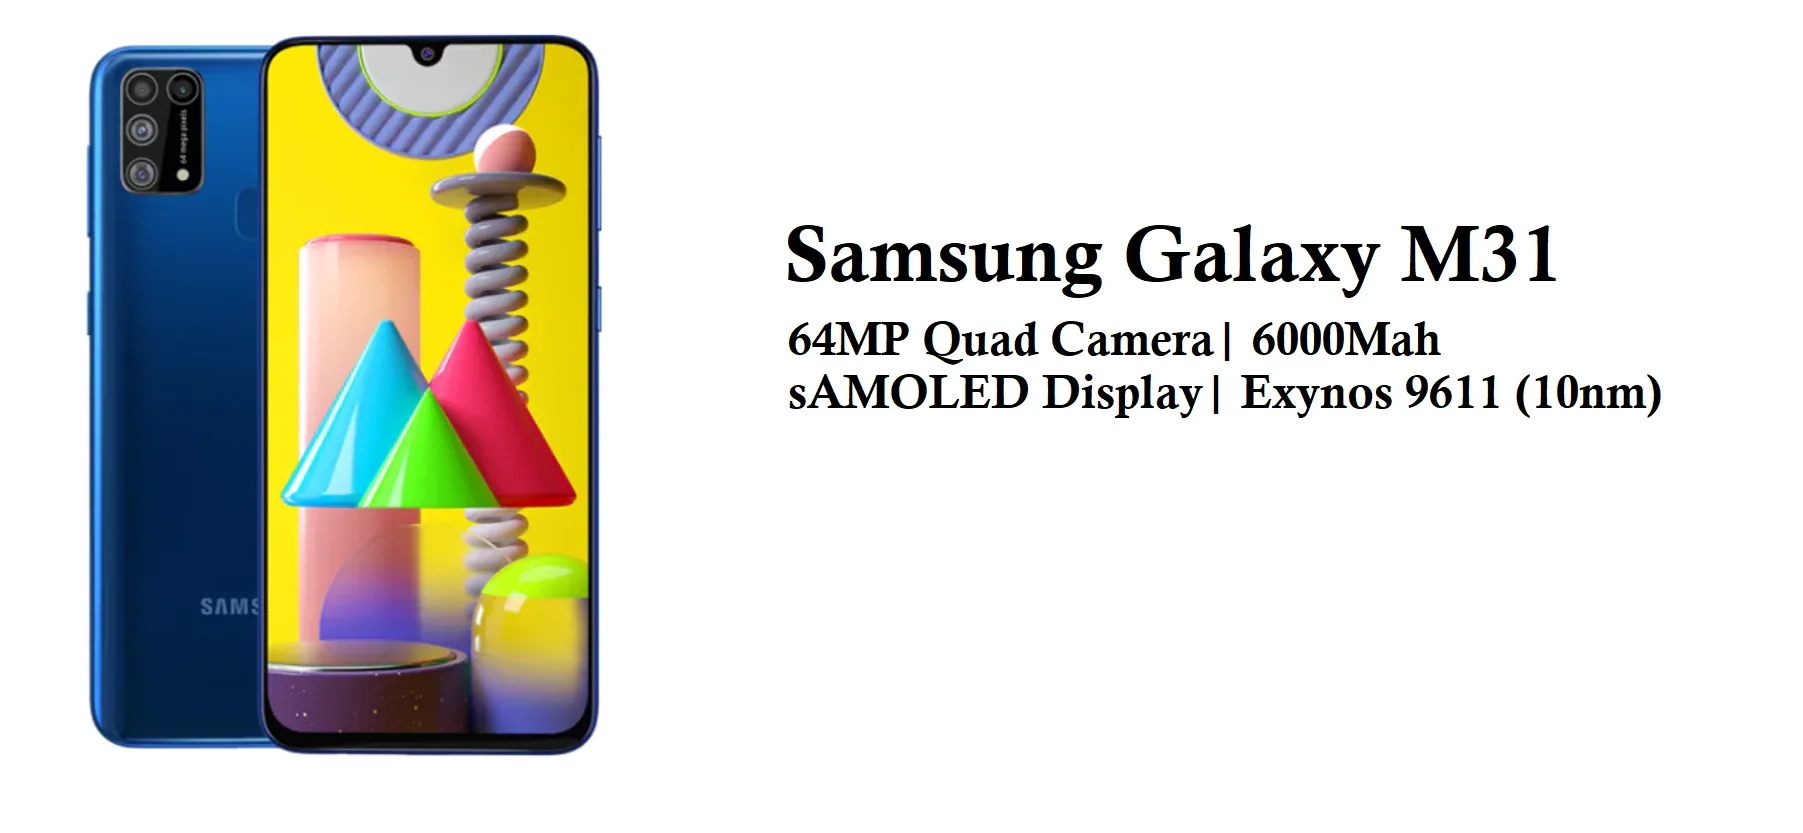 Samsung Galaxy M31 - Best Smartphones Under Rs 20,000 [November 2020]